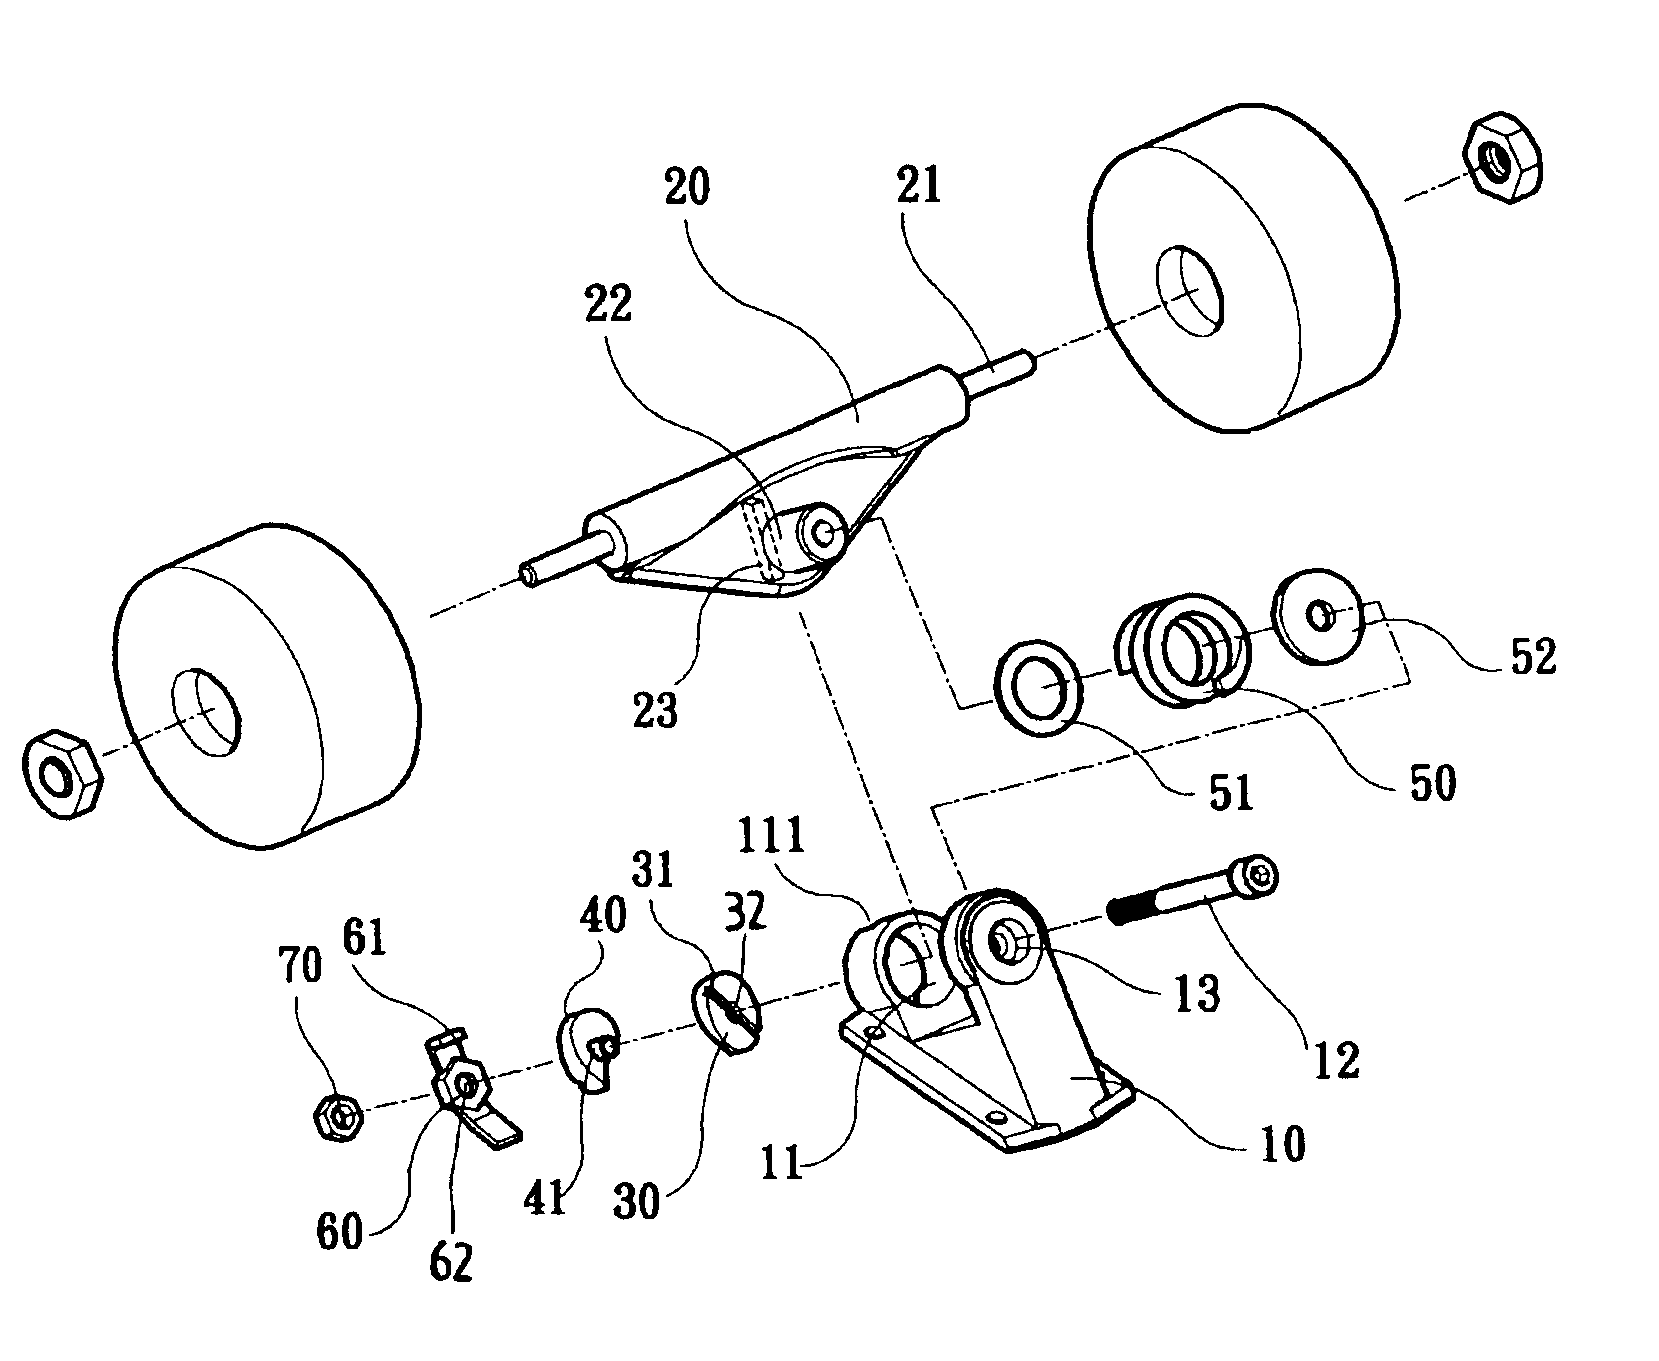 Wheel holder assembly for a skateboard